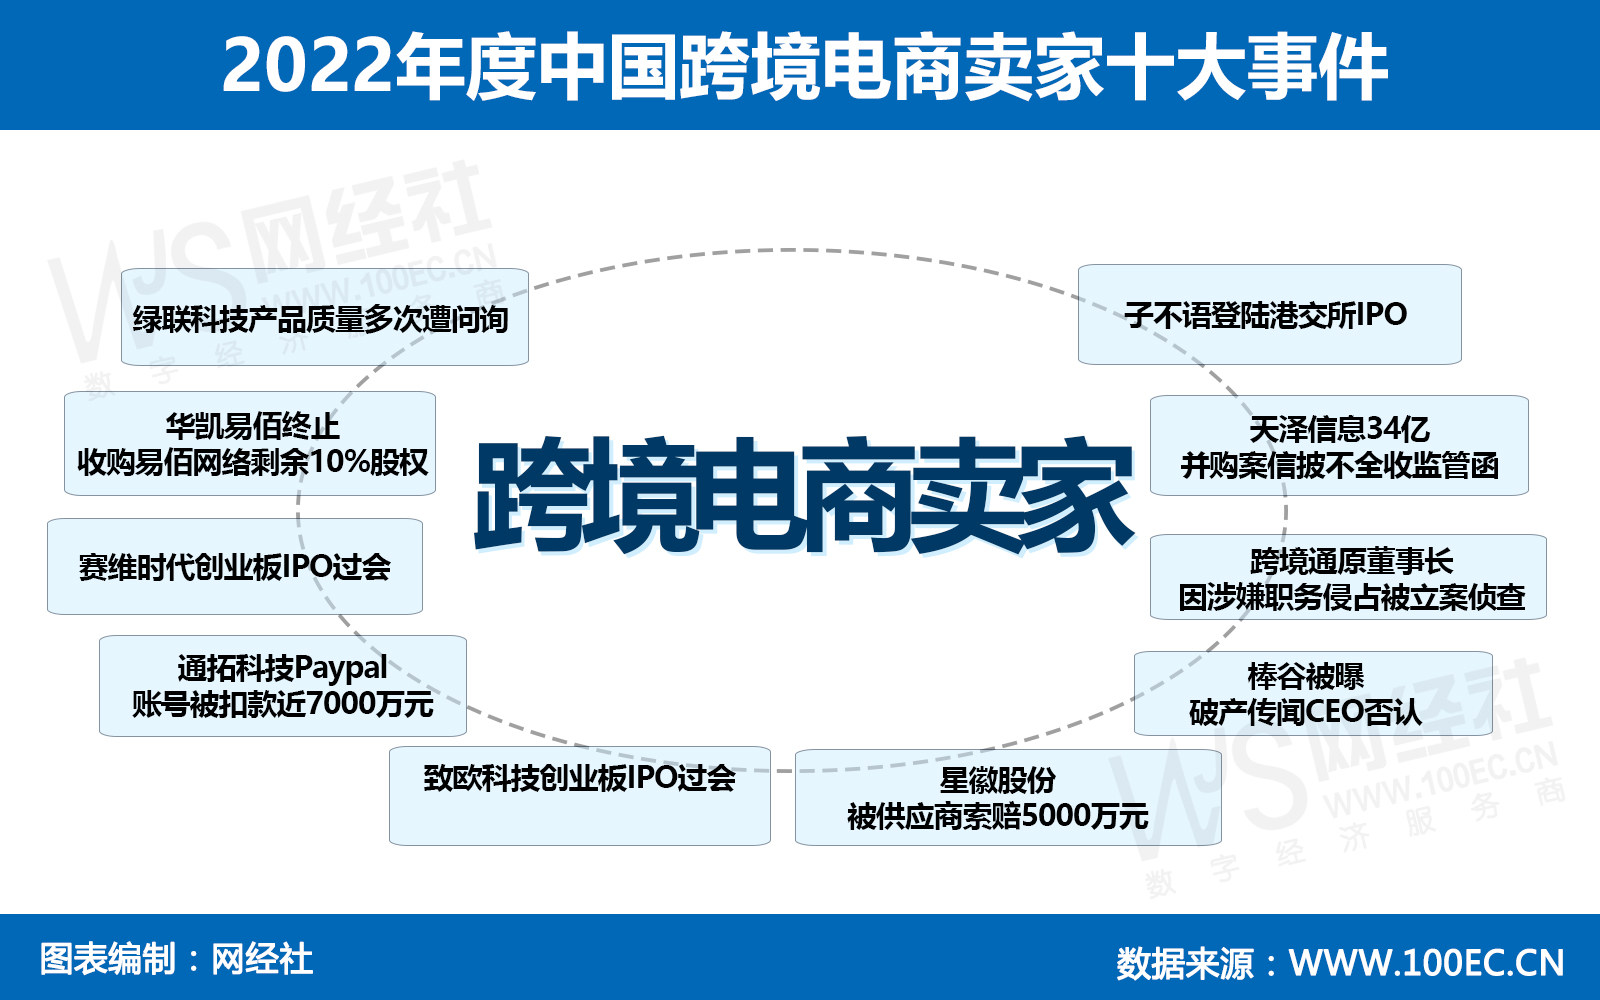 2022年度中国跨境电商卖家十大事件(1).jpg